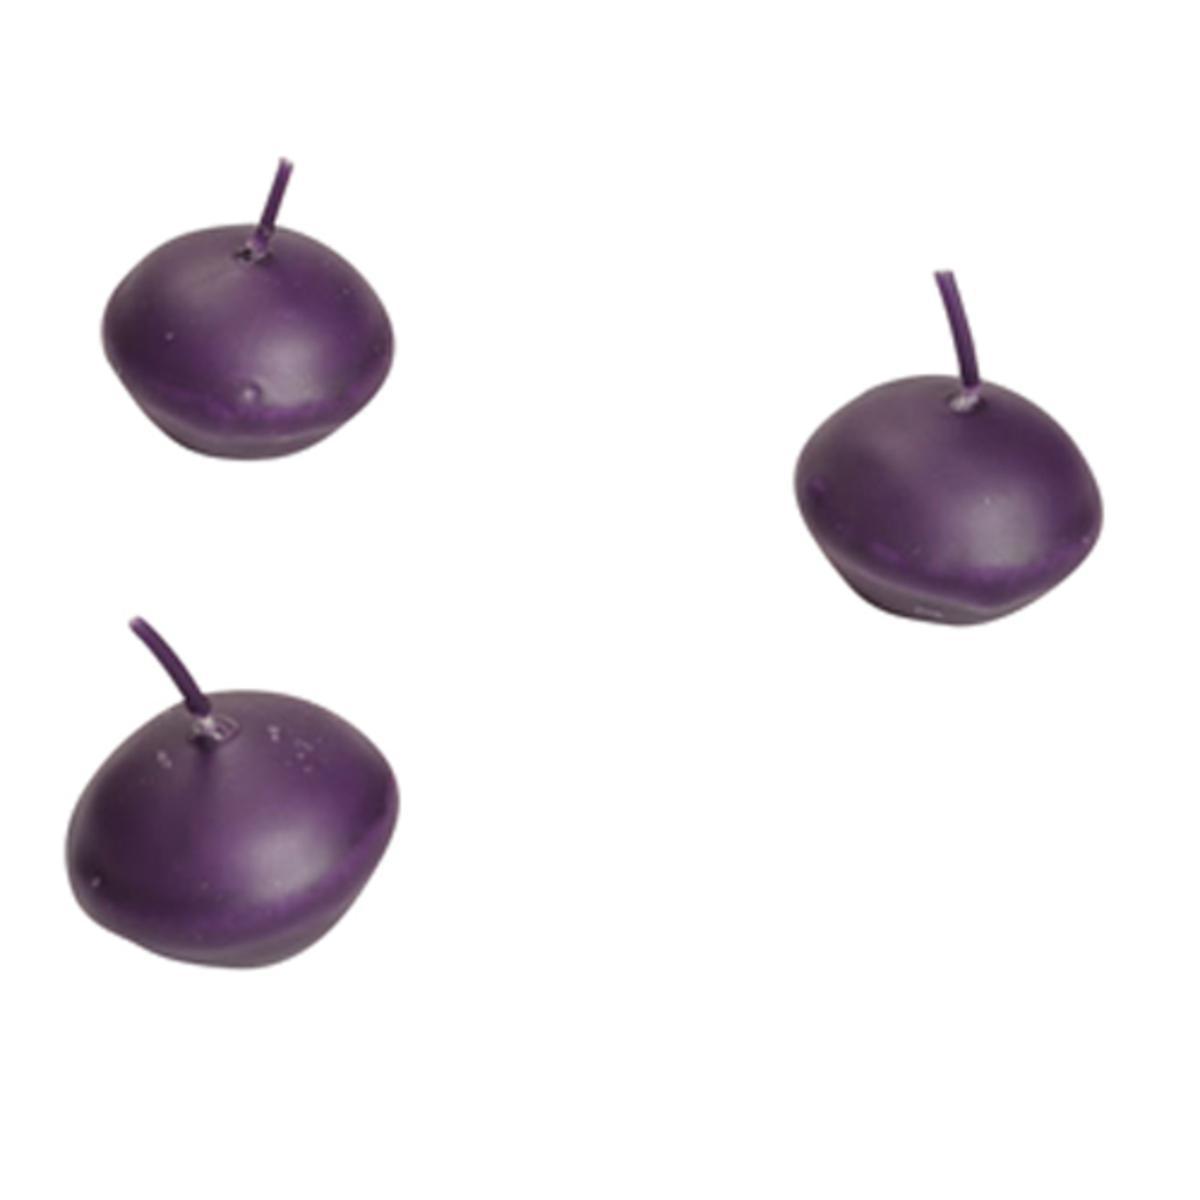 Lot de 9 bougies flottantes en cire - 29 x 30 x 22 cm - Violet